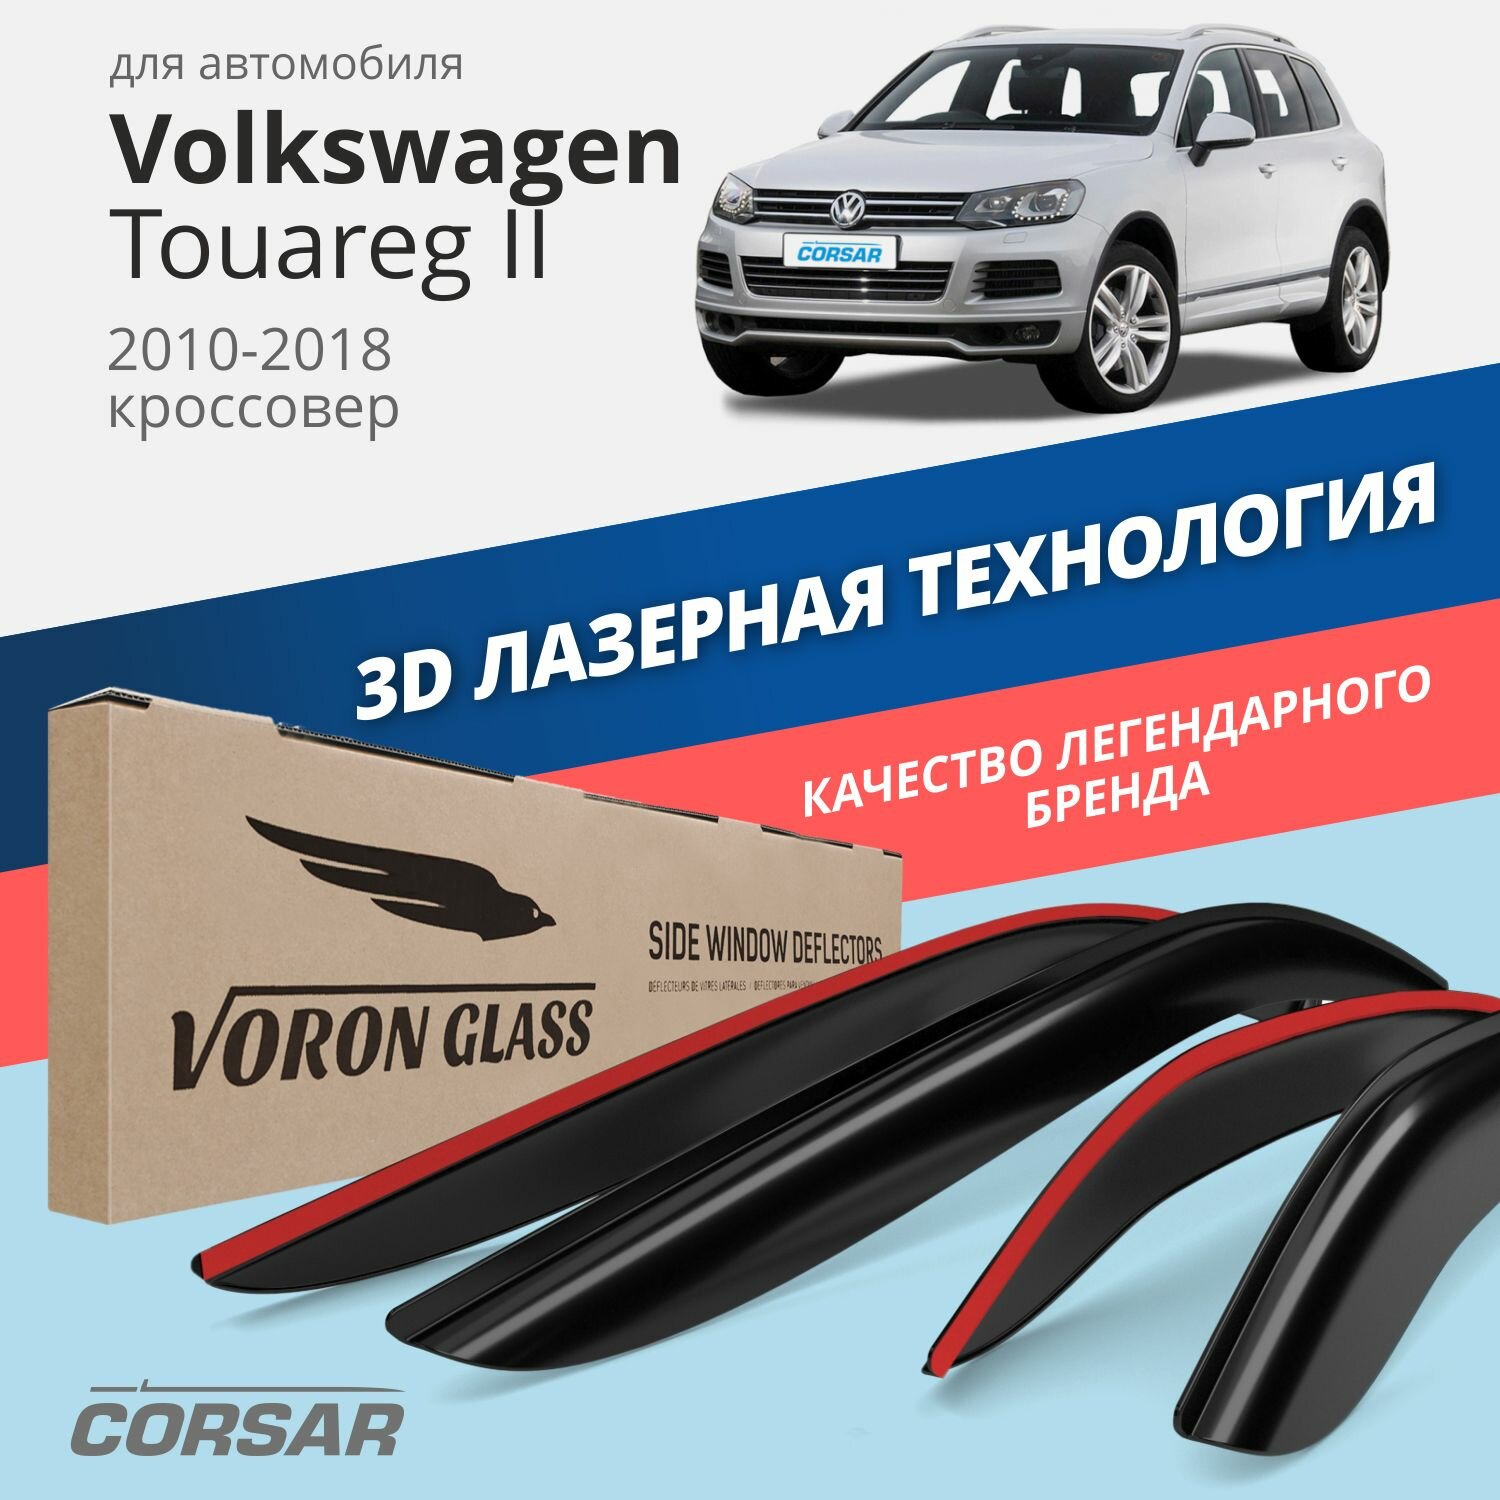 Дефлекторы окон Voron Glass серия Corsar для Volkswagen Touareg II 2010-2018 накладные 4 шт.